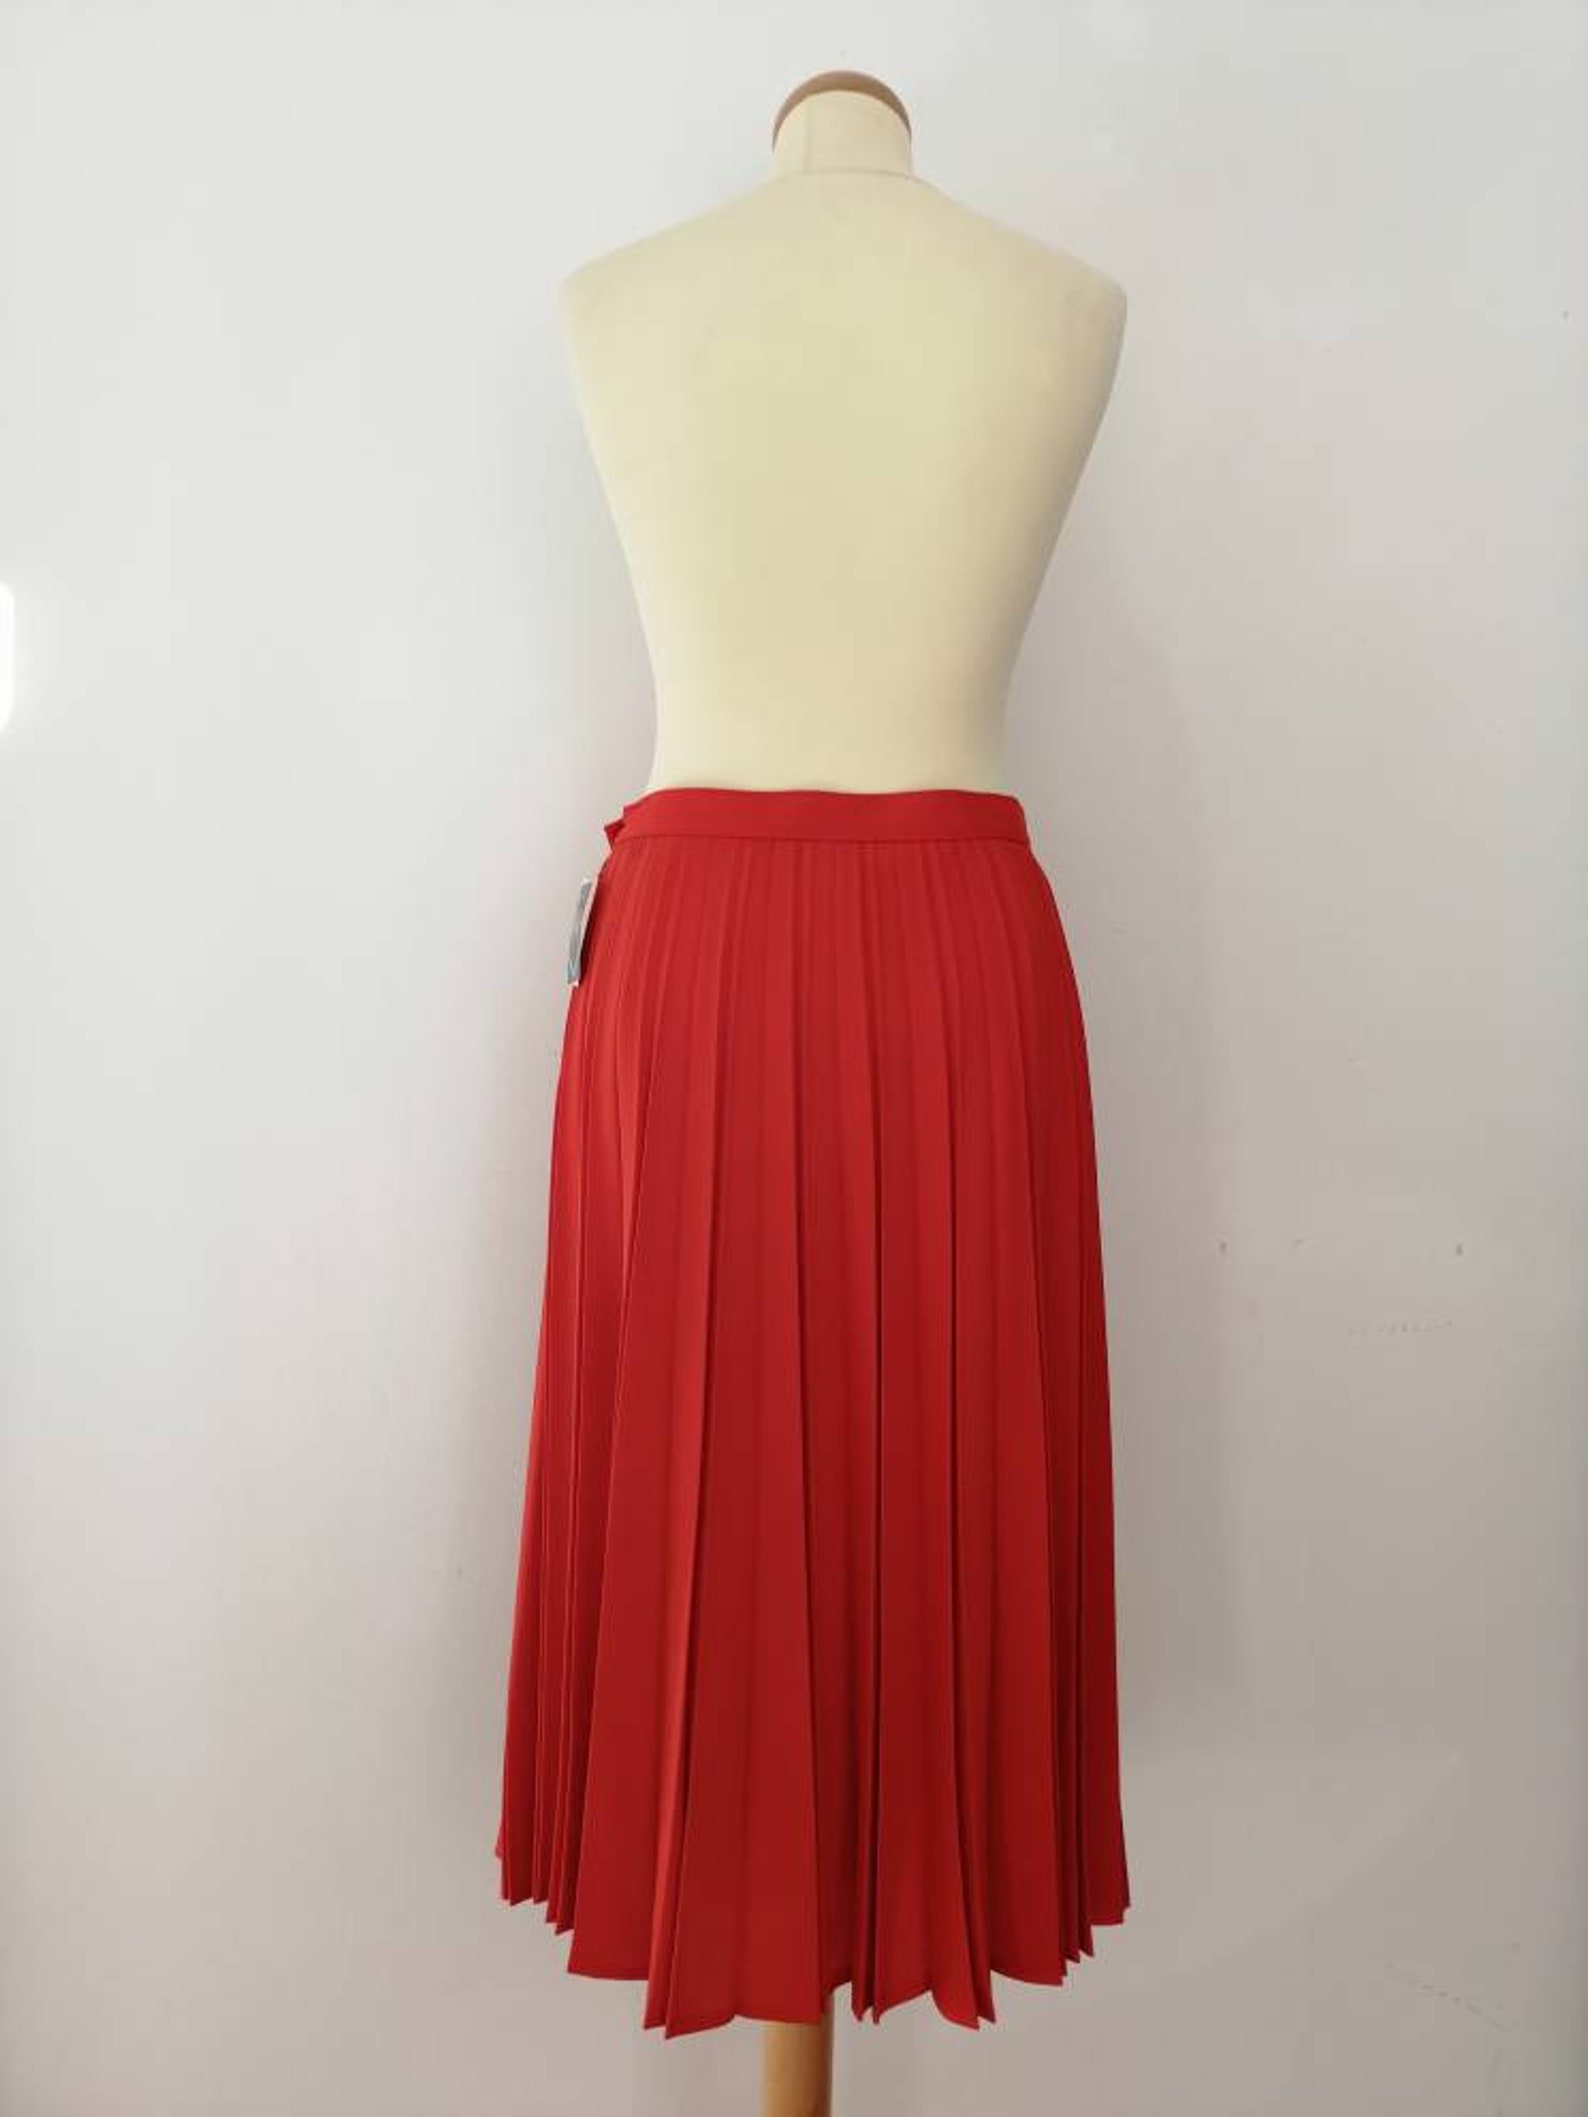 Red pleated skirt 70s vintage 70s skirt longuette skirt | Etsy